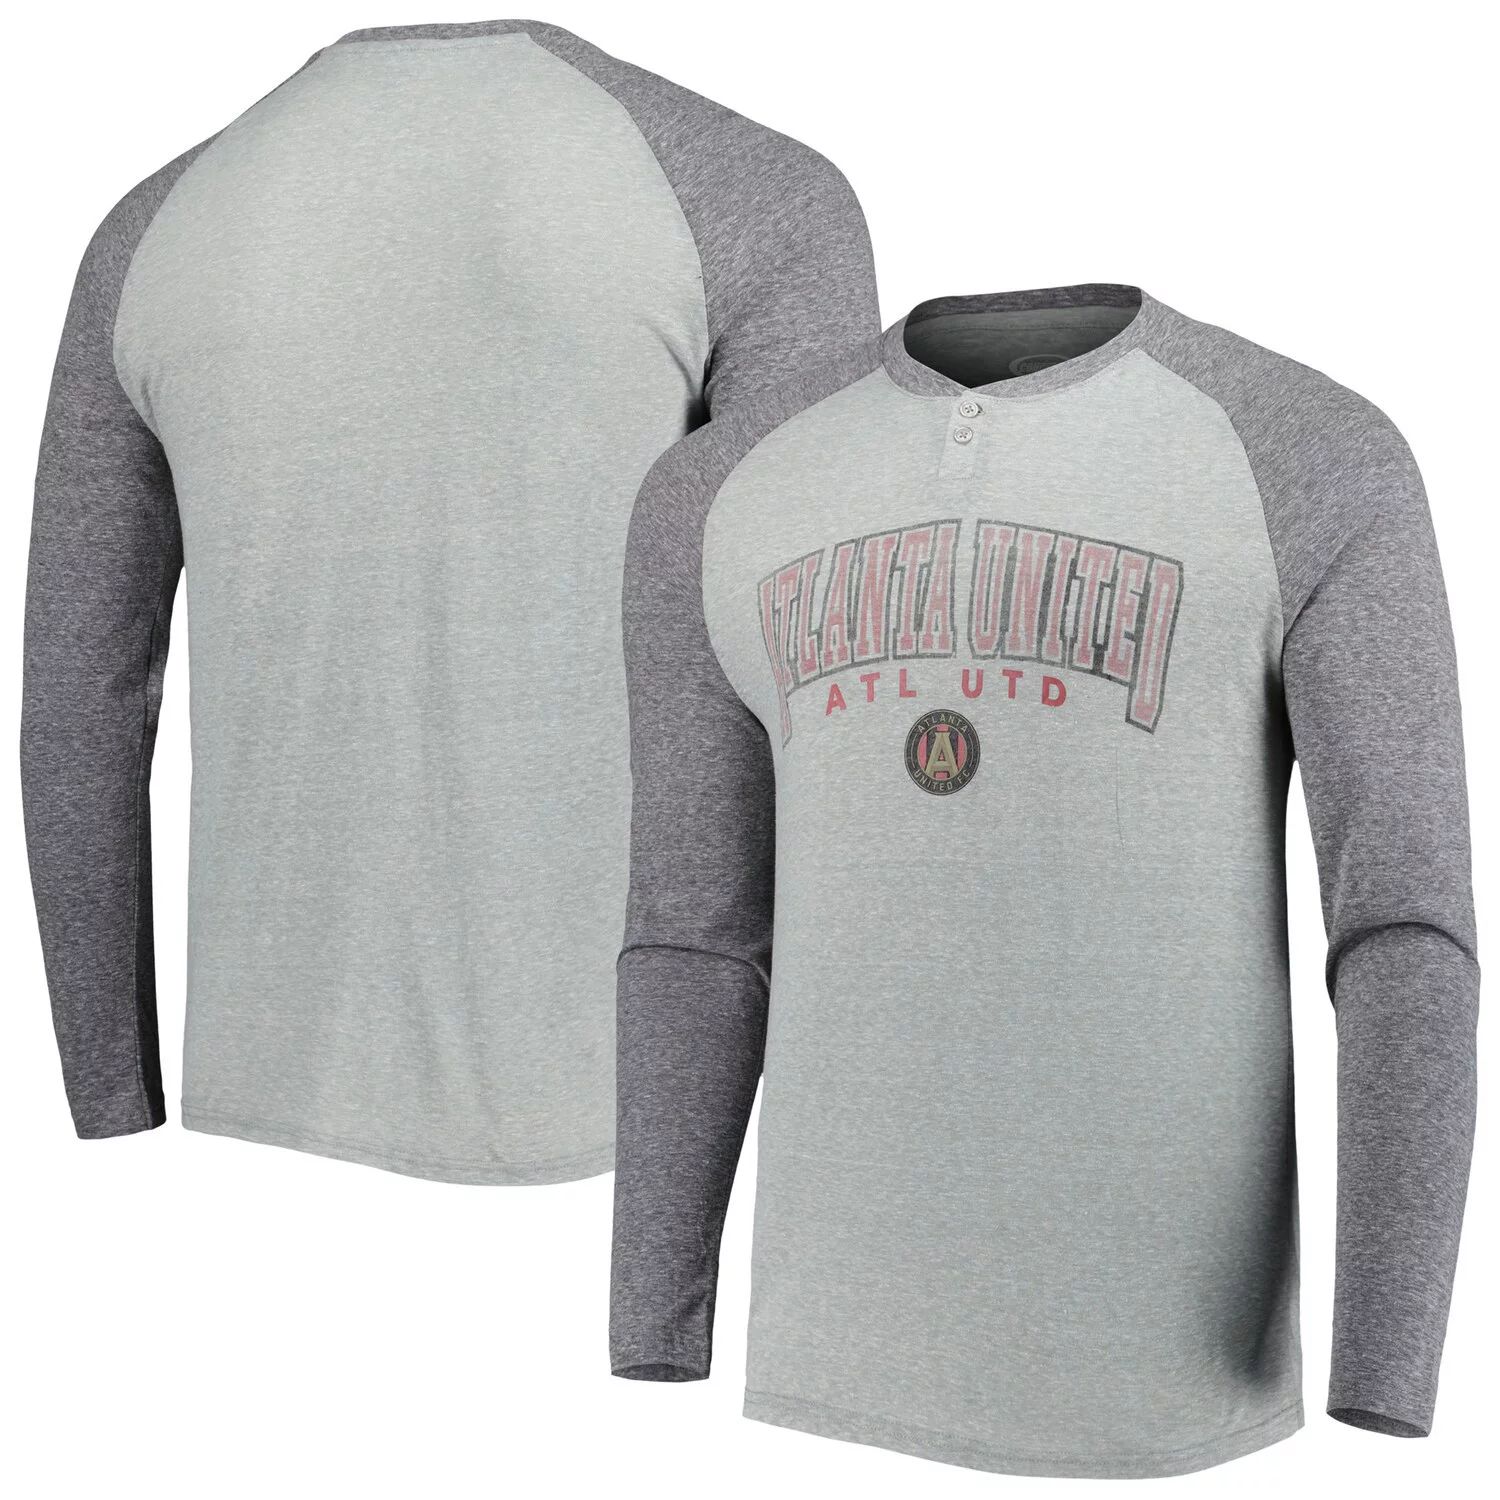 Мужская футболка Concepts Sport с принтом серого цвета/темно-серого цвета с принтом Atlanta United FC Ledger реглан с длинным рукавом